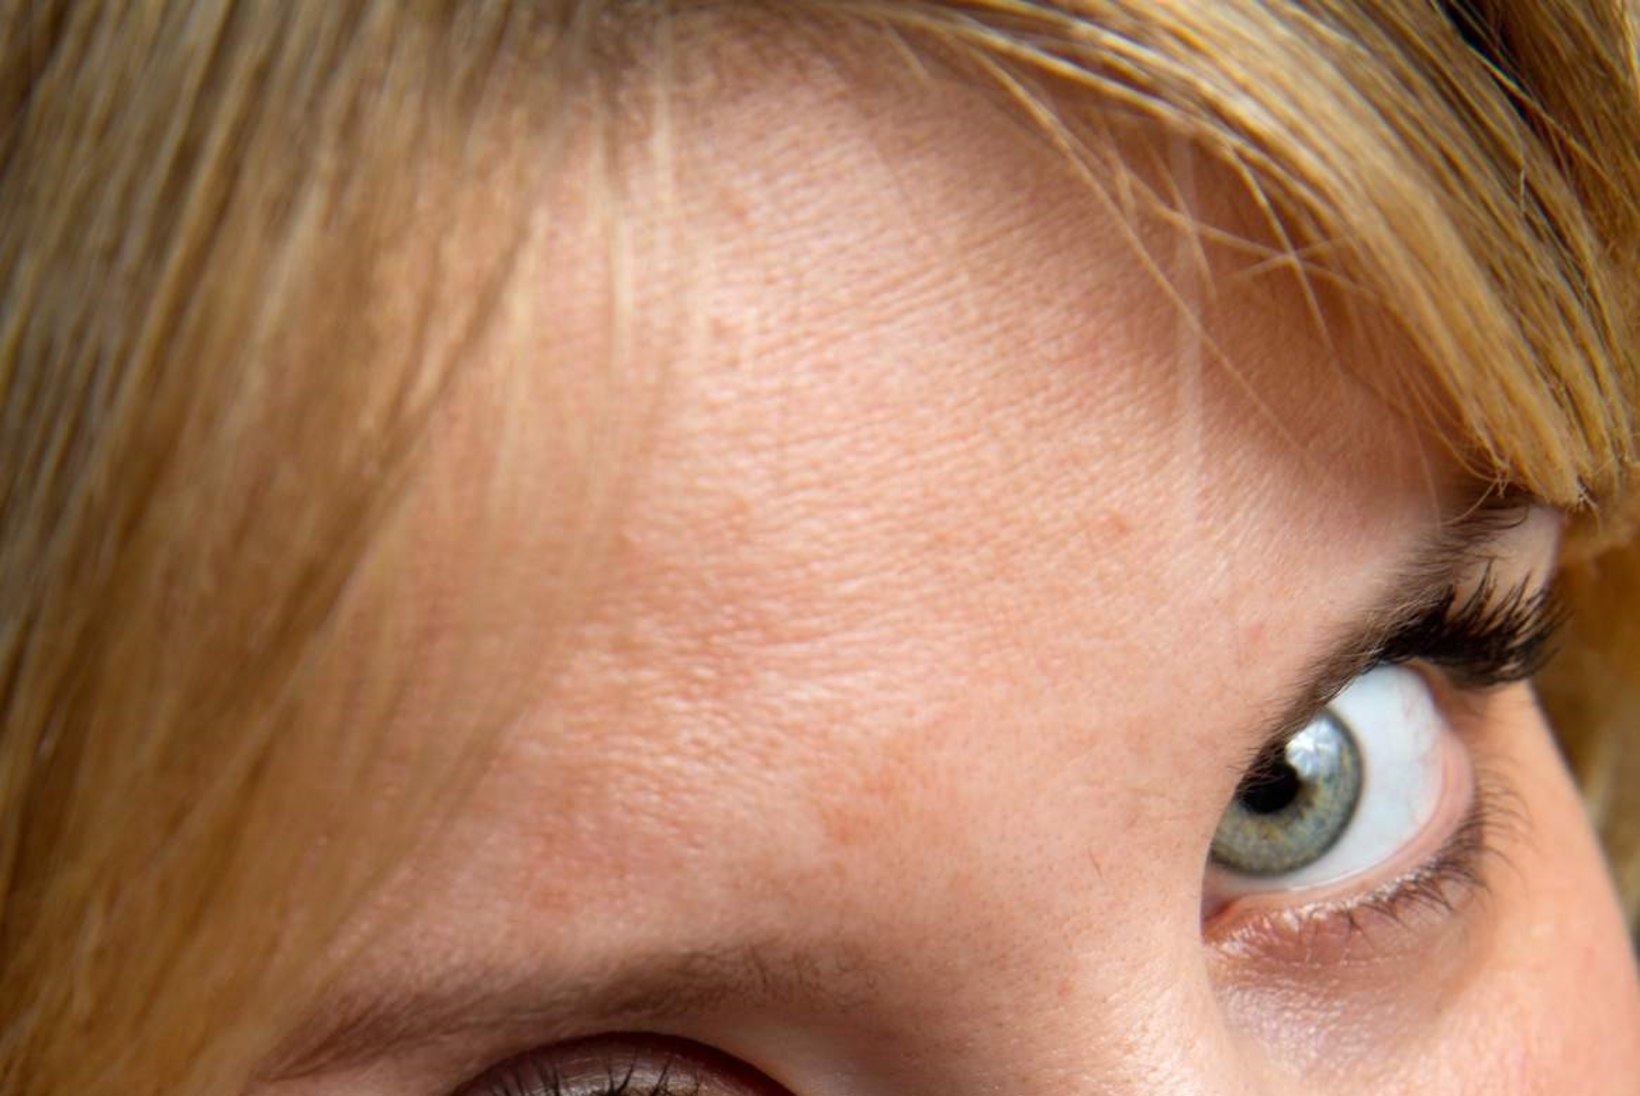 Kontaktläätsed: lohaka kasutamisega riskid silmakahjustustega